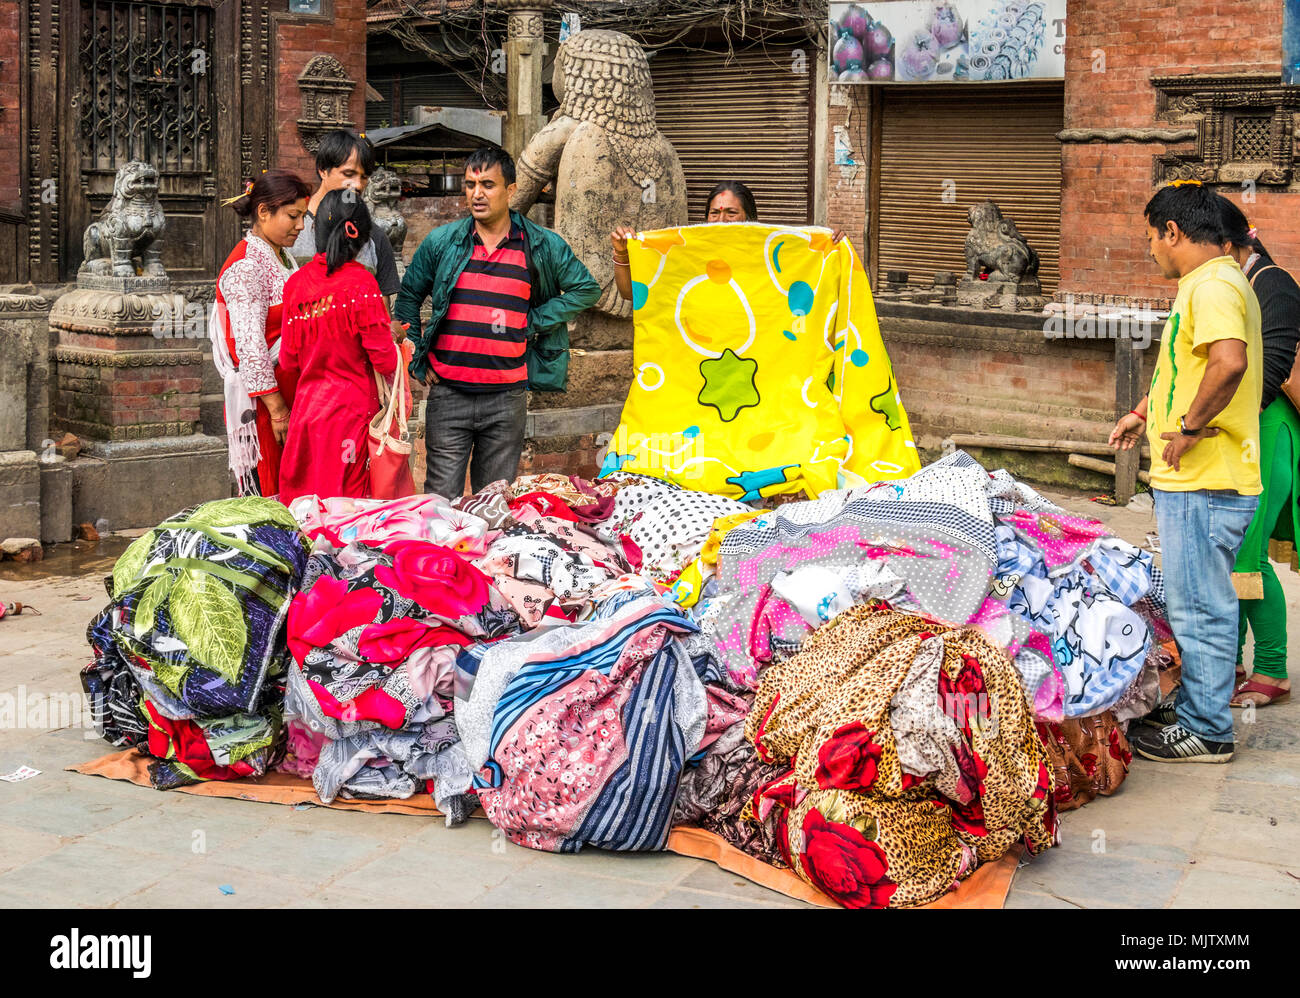 Verkauf Textil Tuch auf Straßen von Kathmandu Nepal Stockfotografie - Alamy